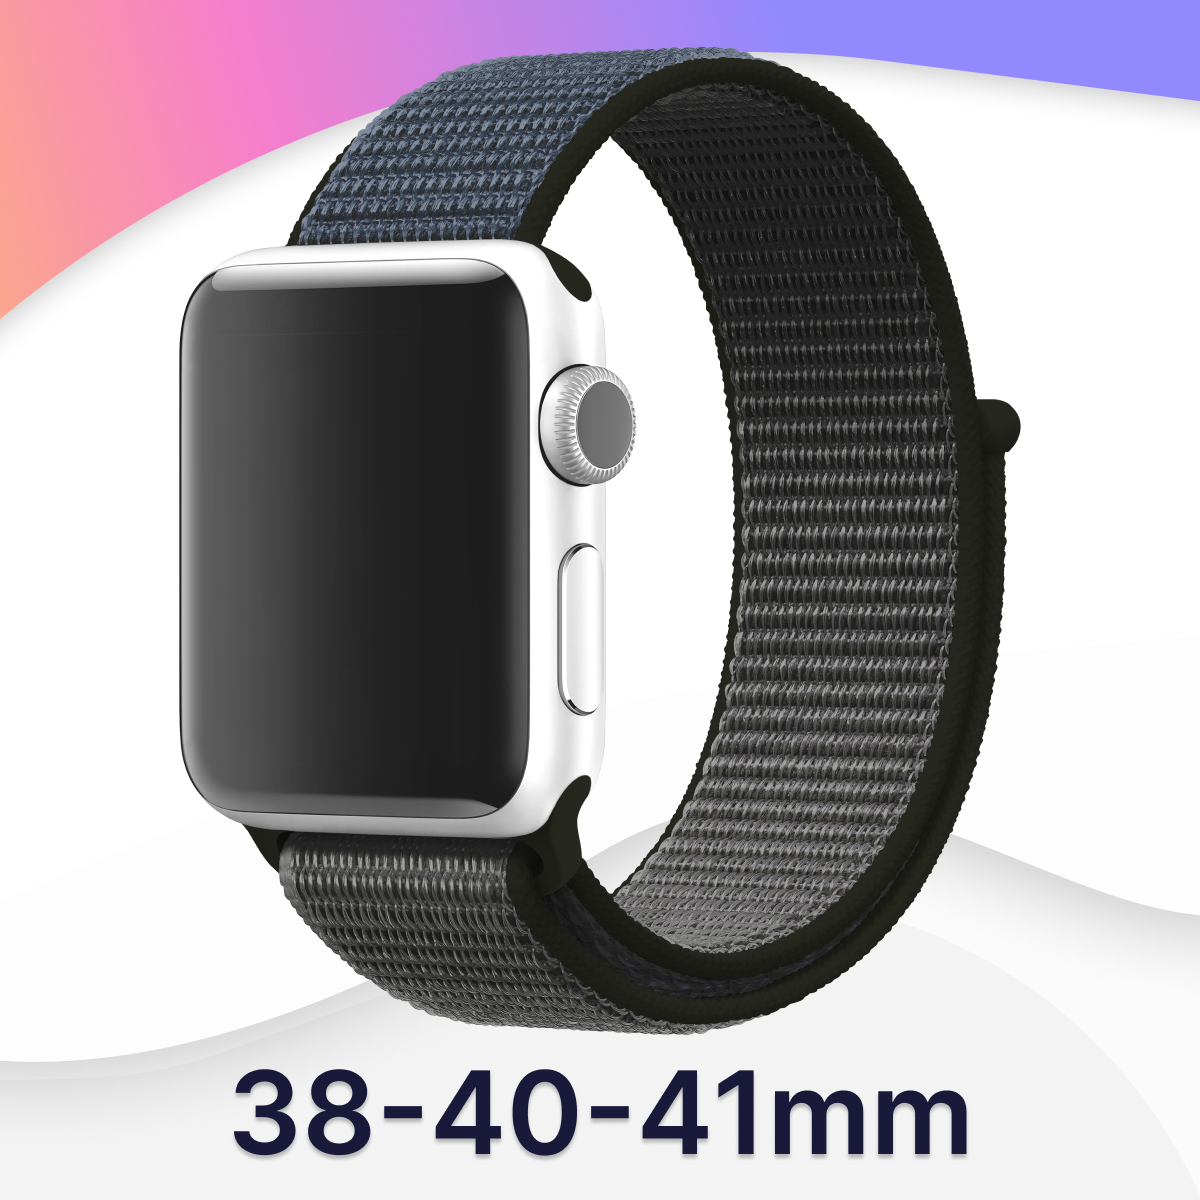 Нейлоновый ремешок для часов Apple Watch 38-40-41 mm, Series 1-9, SE / Тканевый фитнес браслет на липучке Эпл Вотч 38-40-41 мм (Черно-белый)